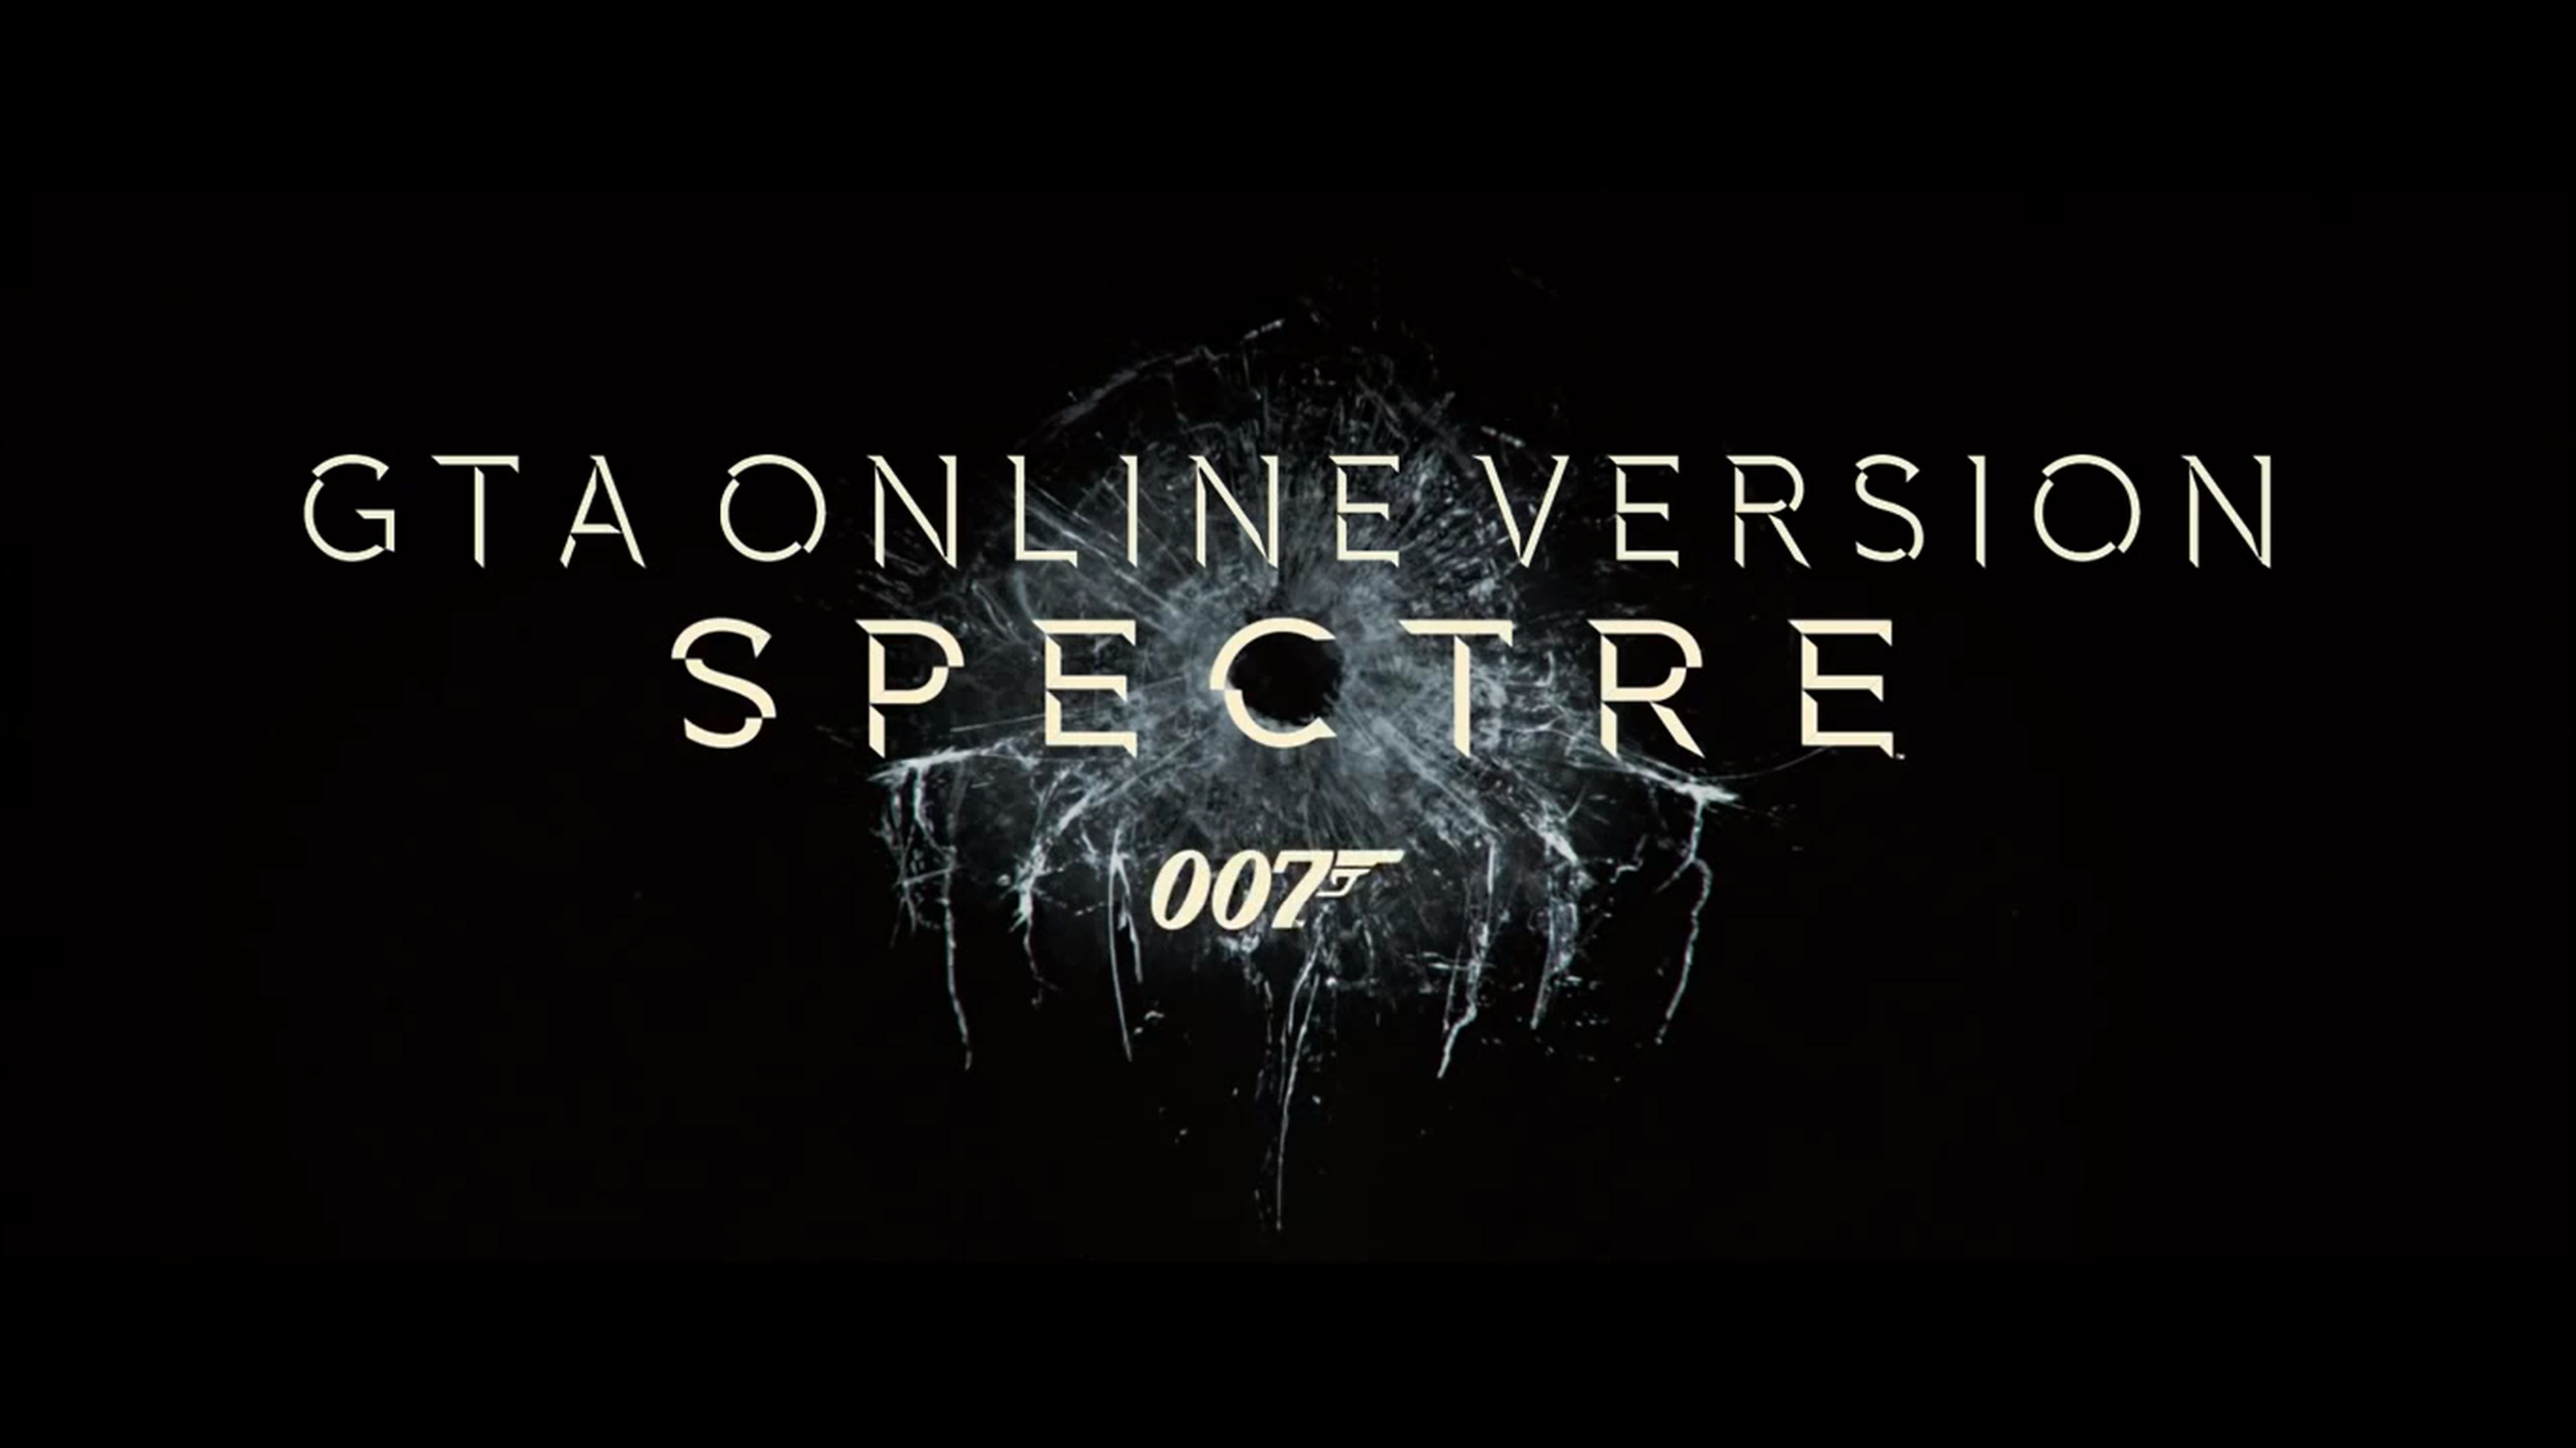 James Bond_ Spectre - Remake_Parody in GTA V